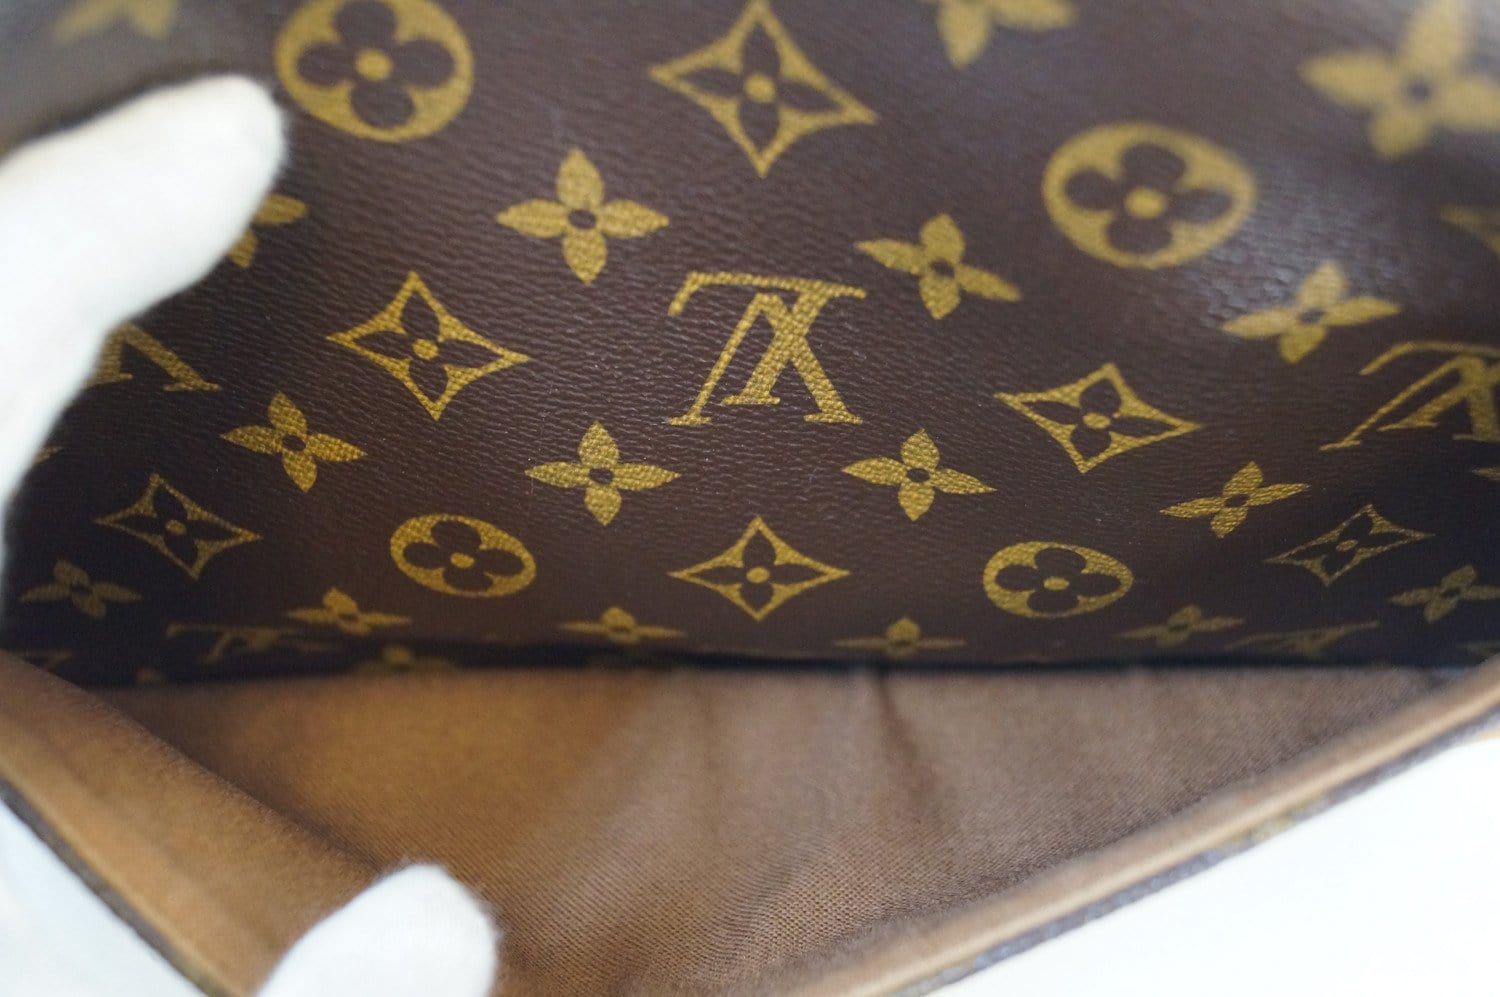 Louis Vuitton LOUIS VUITTON Sologne shoulder bag monogram canvas diagonal  hanging M42250